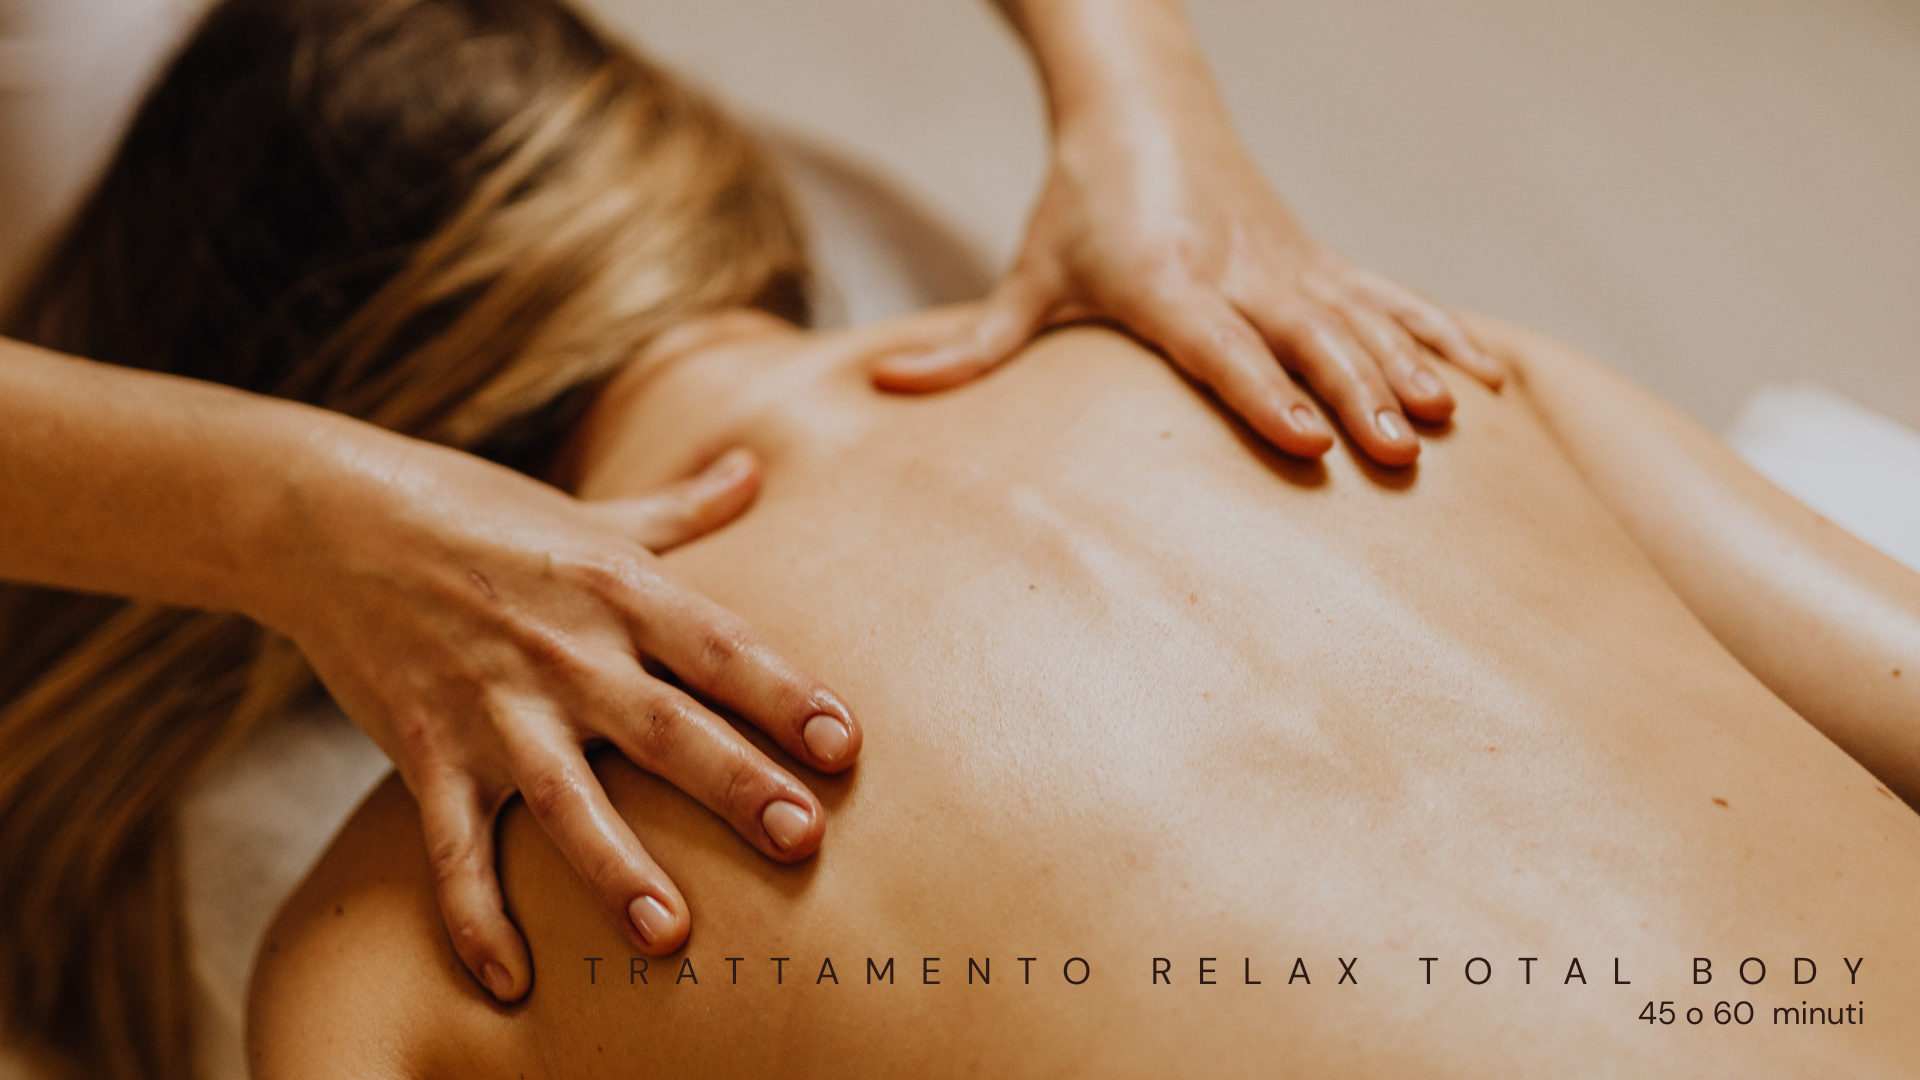 Trattamento Rilassante Total Body è un massaggio per rilassare complessivamente tutte le tensioni del corpo. Sono delle manipolazioni lente e profonde che aiutano a liberare le tossine, migliorando il ritmo sonno-veglia e portando maggior equilibrio psicofisico.